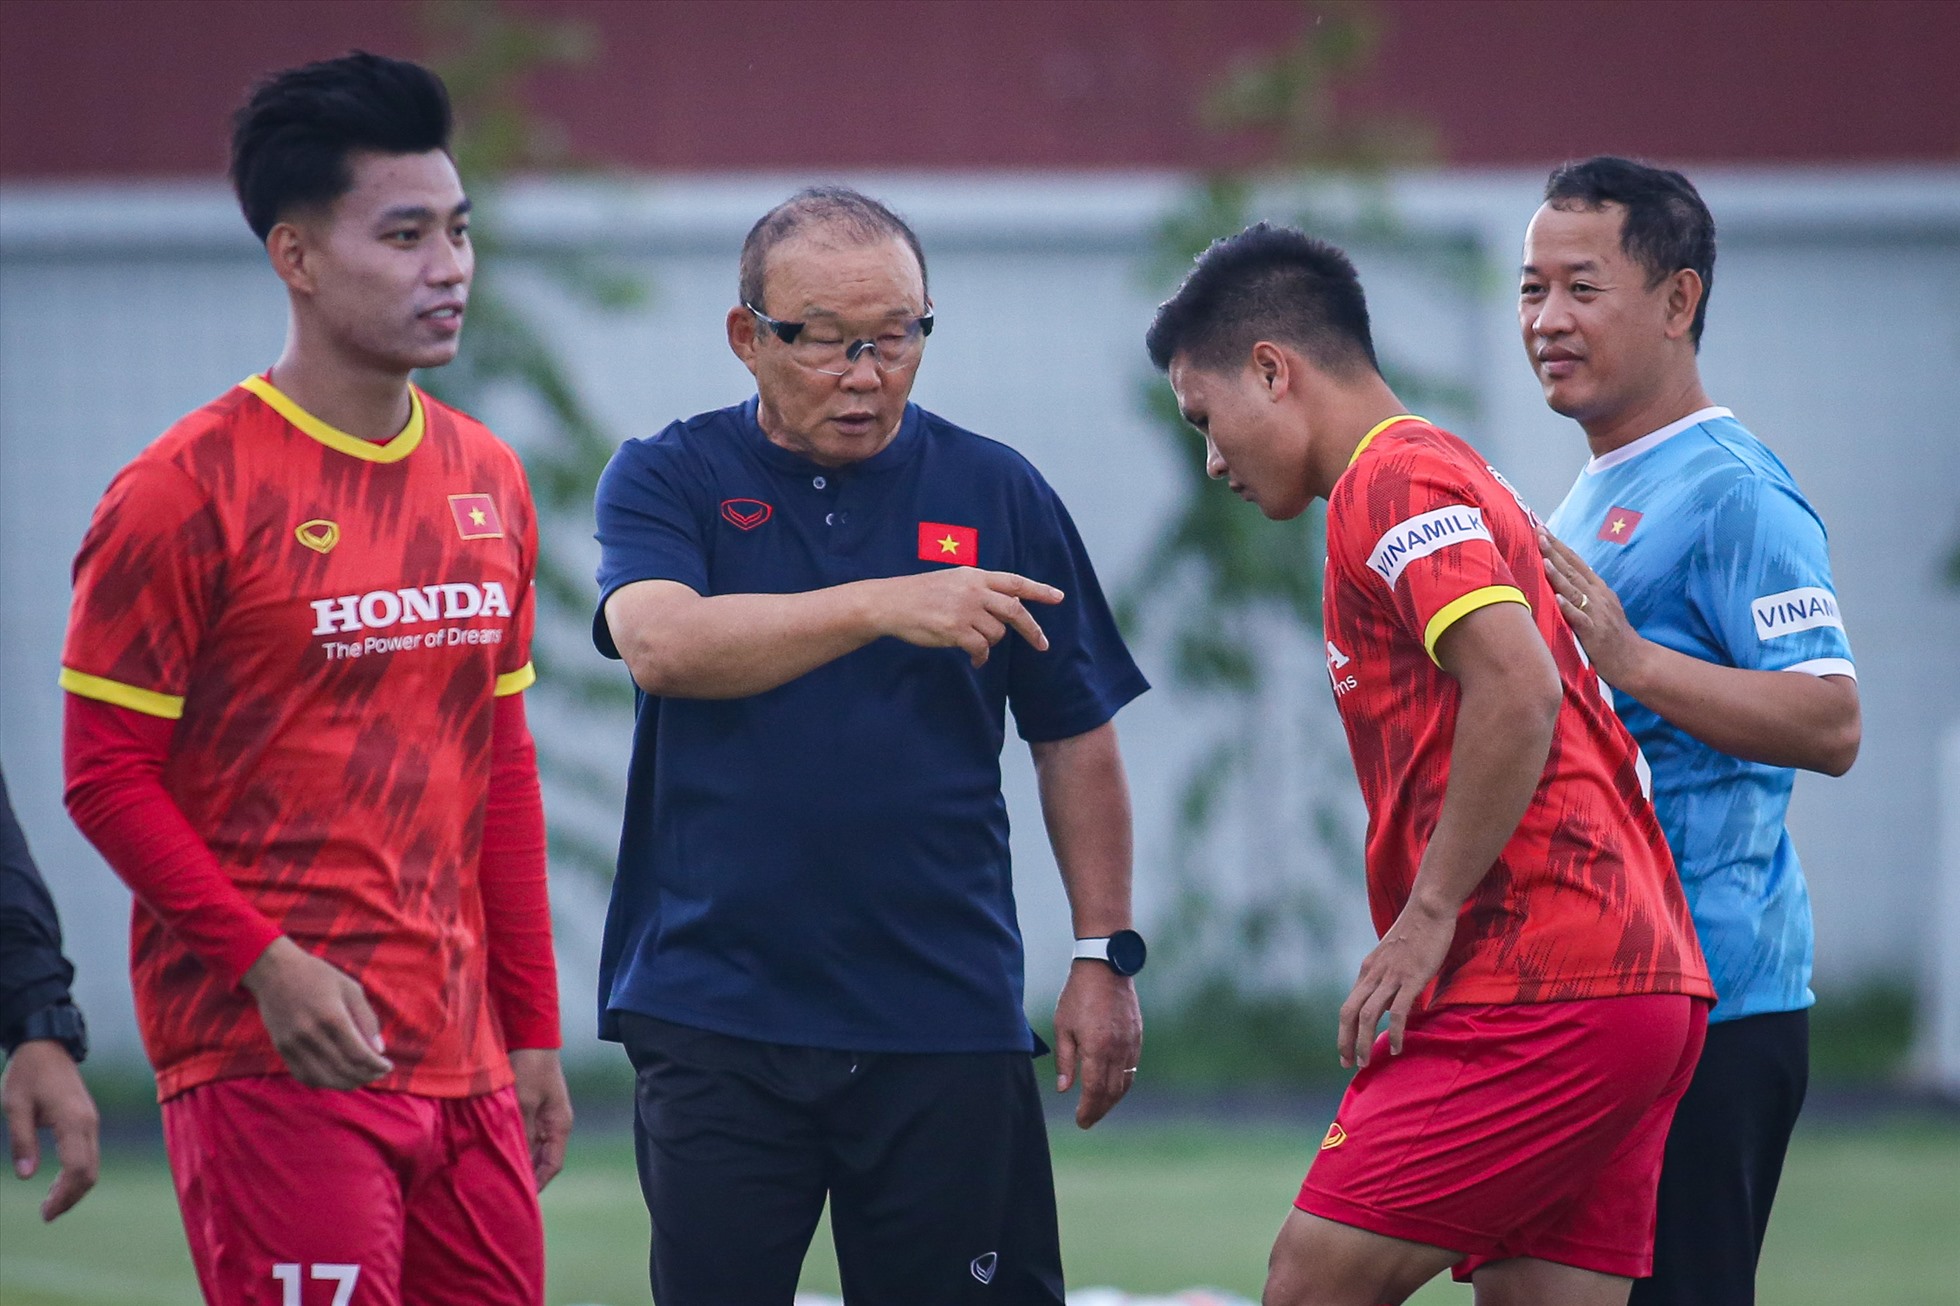 Theo lịch được Liên đoàn bóng đá Việt Nam (VFF) thông báo cho các phóng viên, tiền vệ Nguyễn Quang Hải sẽ là người trả lời phỏng vấn. Theo quan sát, trước khi Quang Hải tiến đến khu vực phỏng vấn, huấn luyện viên Park Hang-seo đã có những trao đổi và dặn dò cầu thủ này.